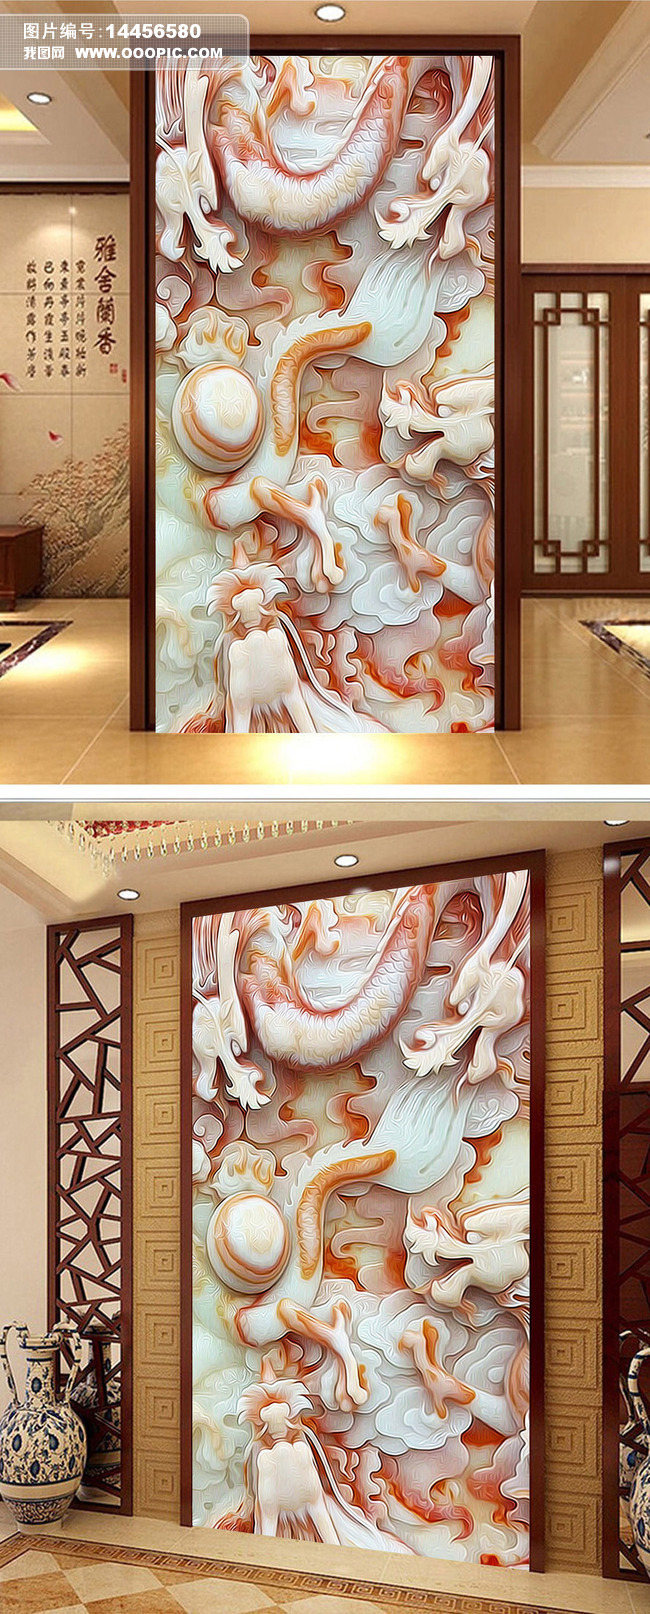 中国龙汉白玉浮雕玄关背景墙图片设计素材_高